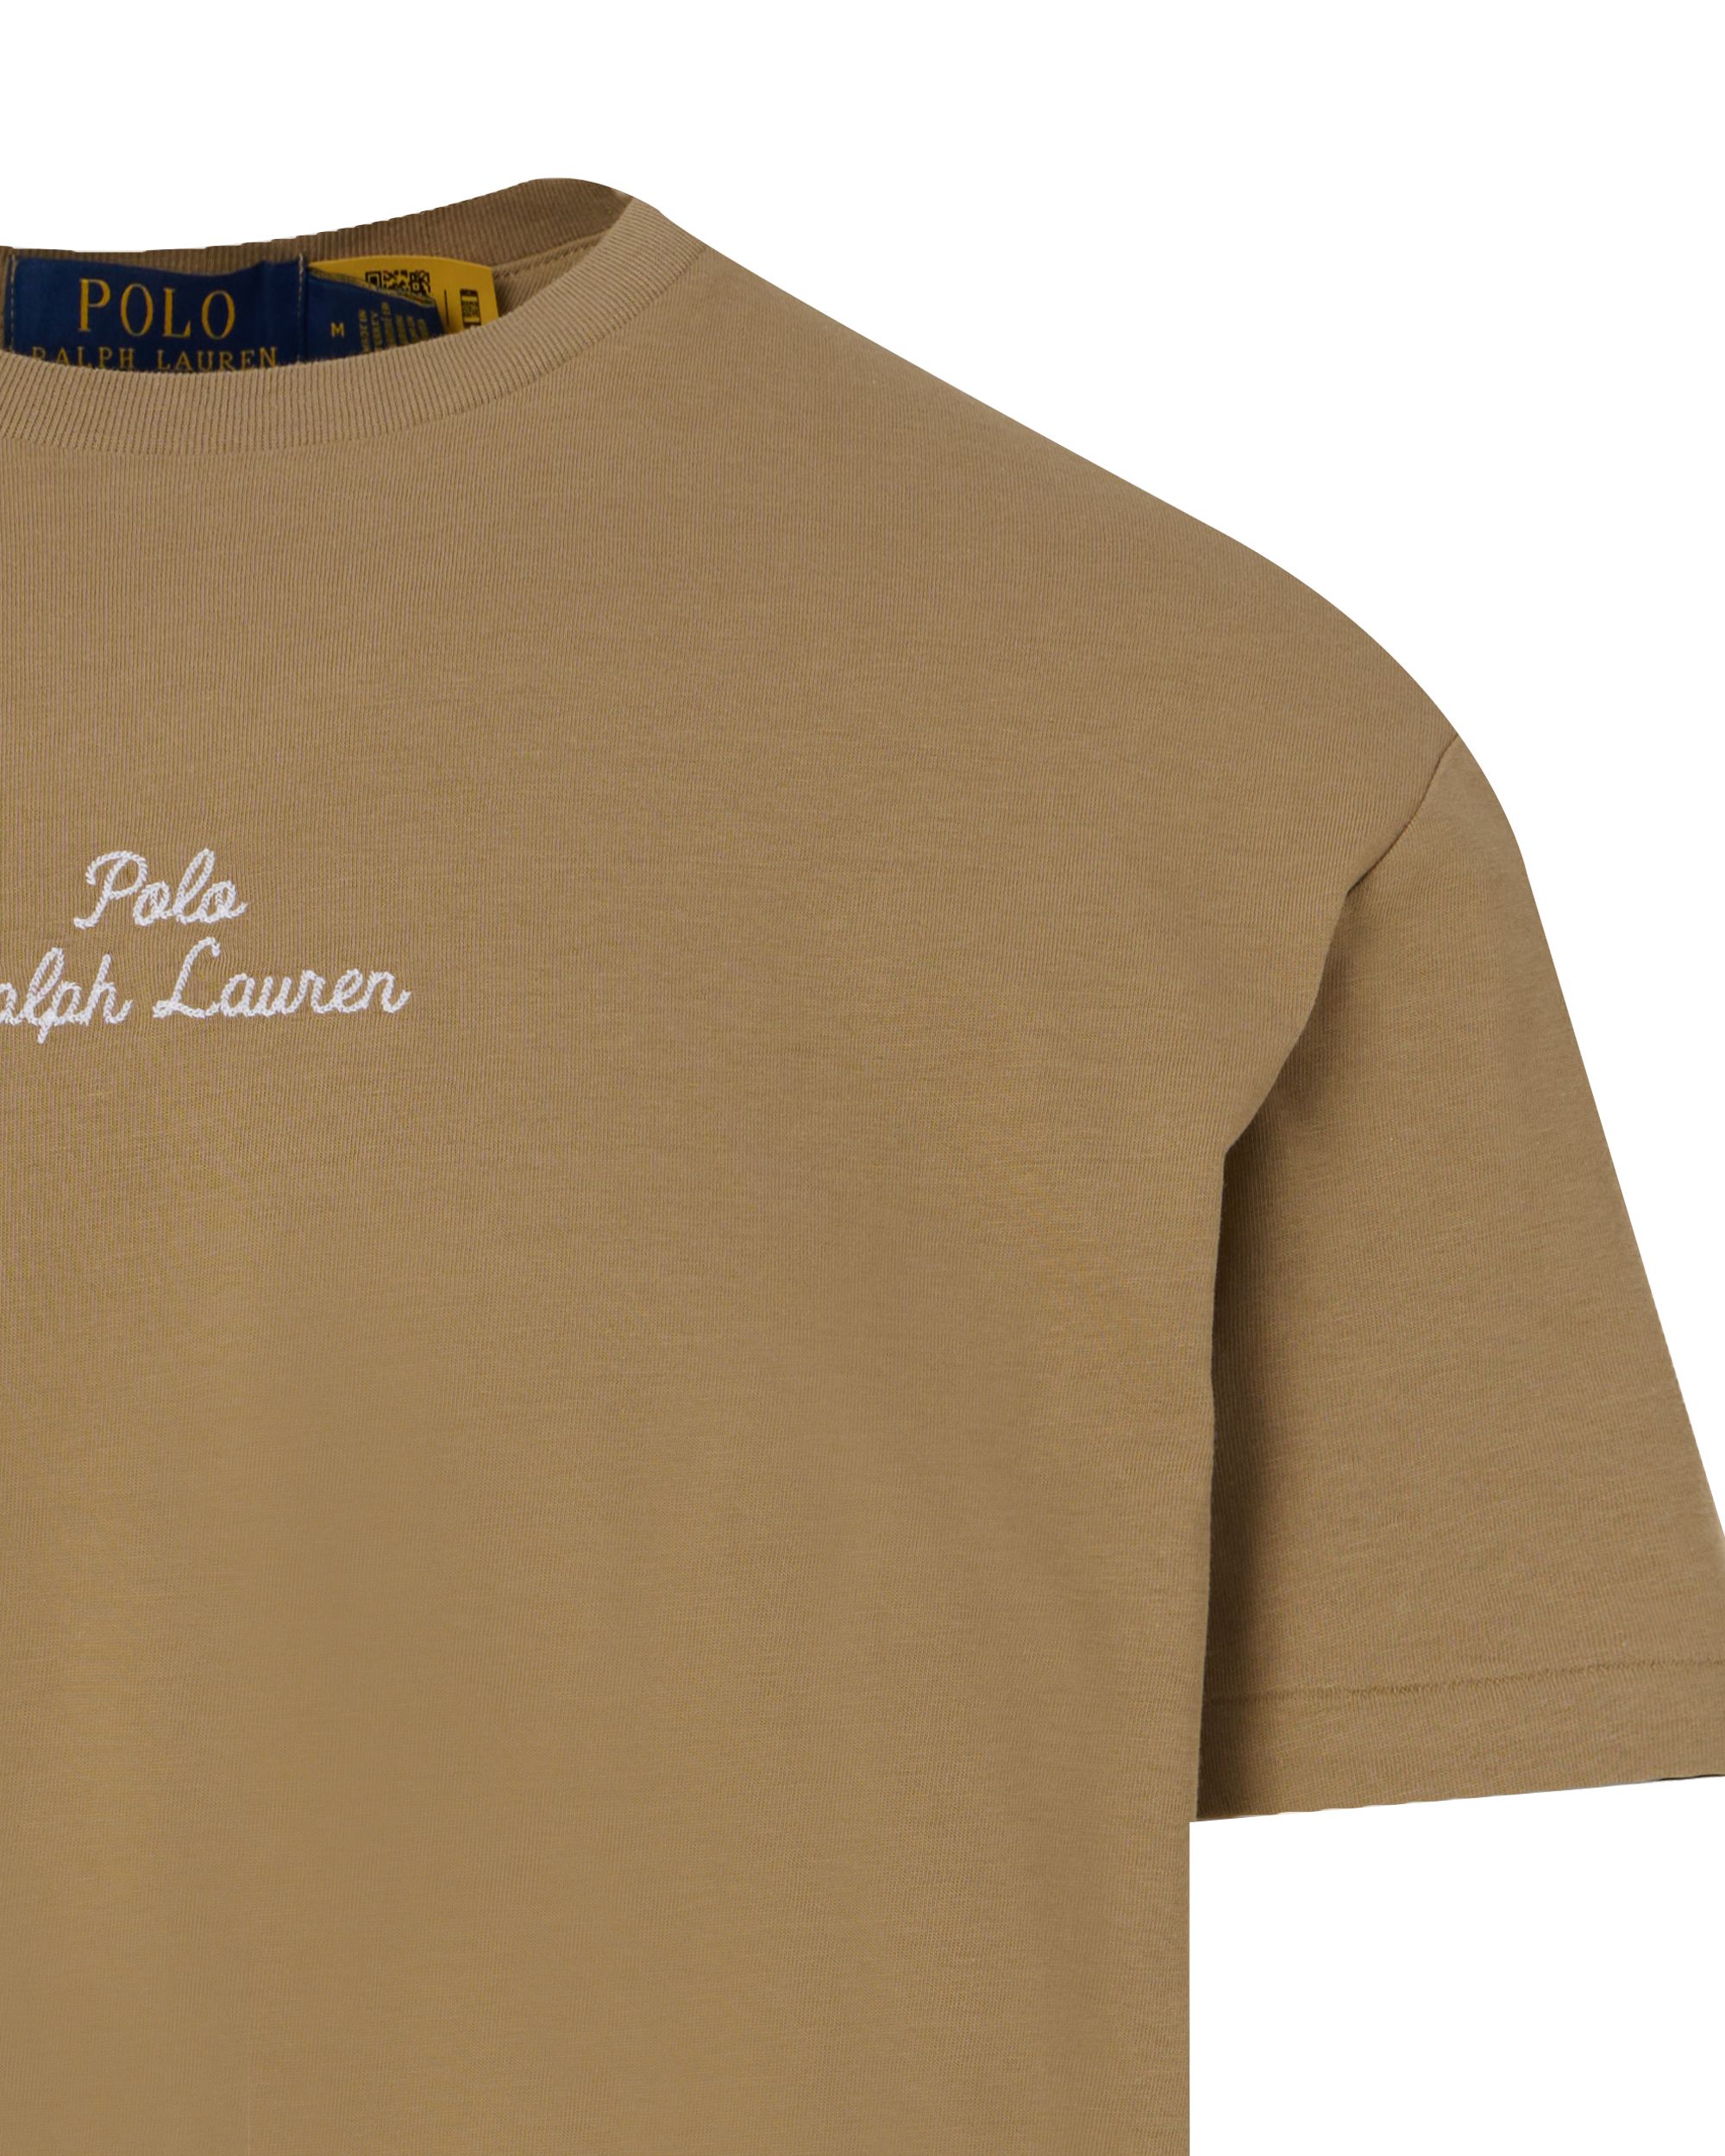 Polo Ralph Lauren T-shirt KM Beige 095301-001-L